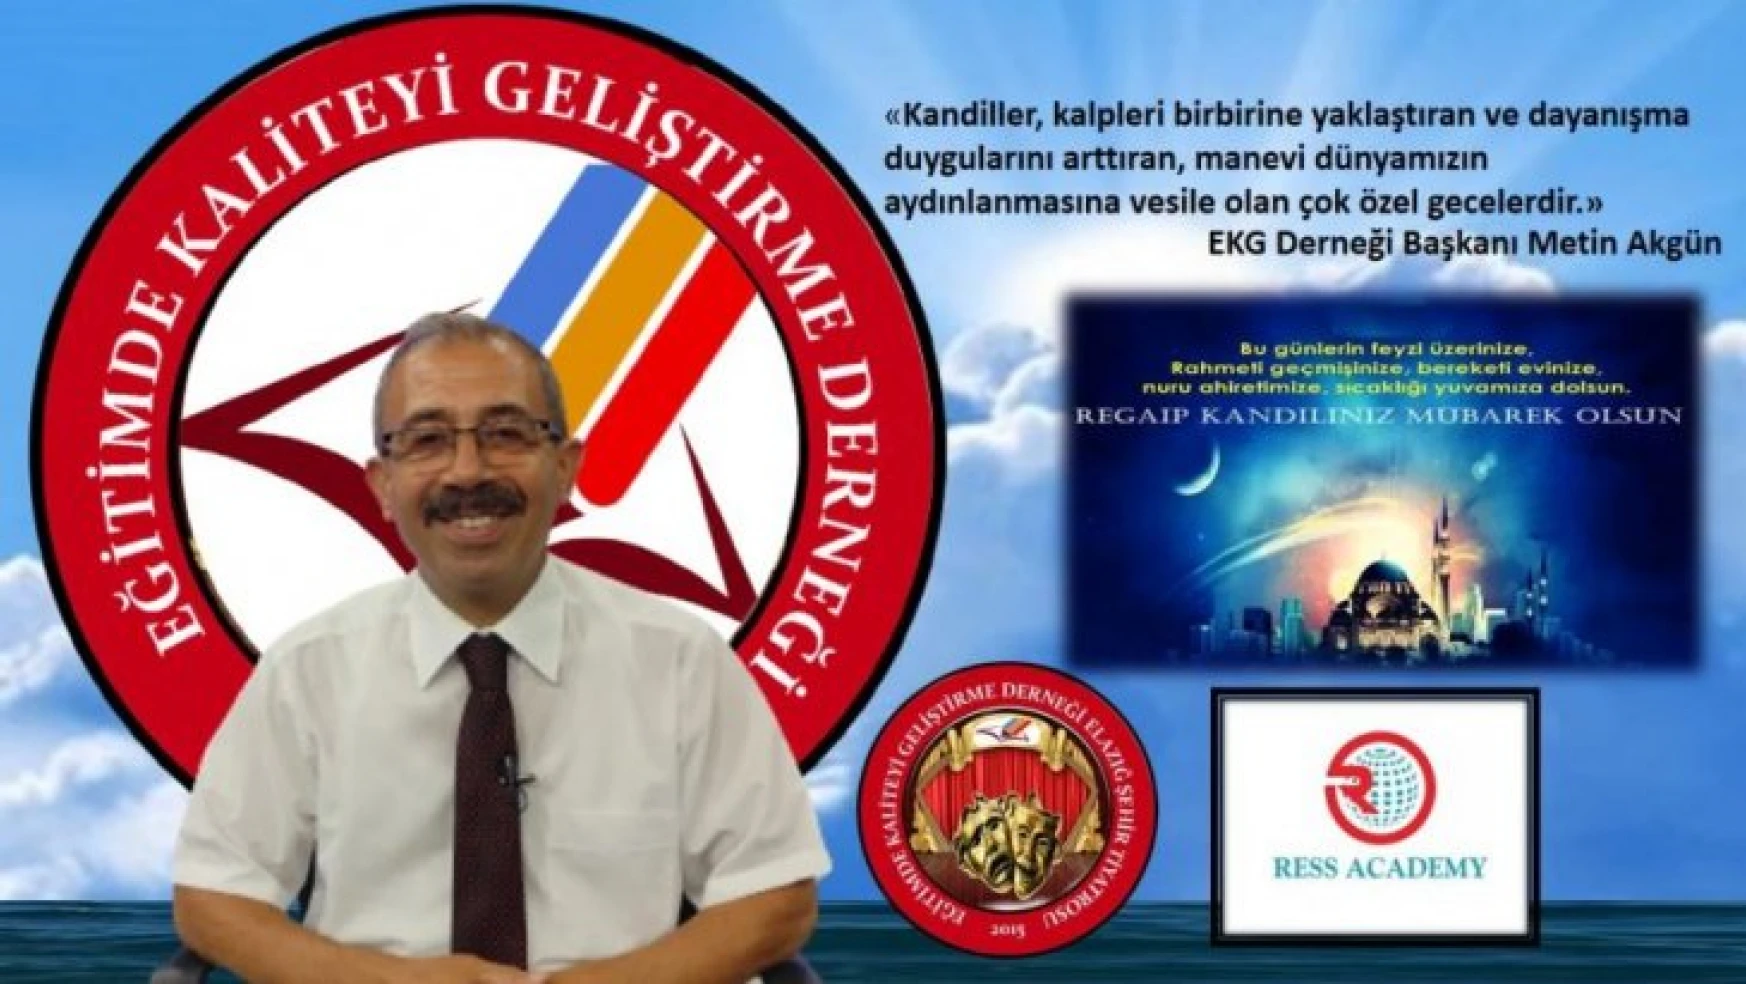 EKG Derneği Başkanı AKGÜN'ün 'Hicri Yılbaşı' Mesajı